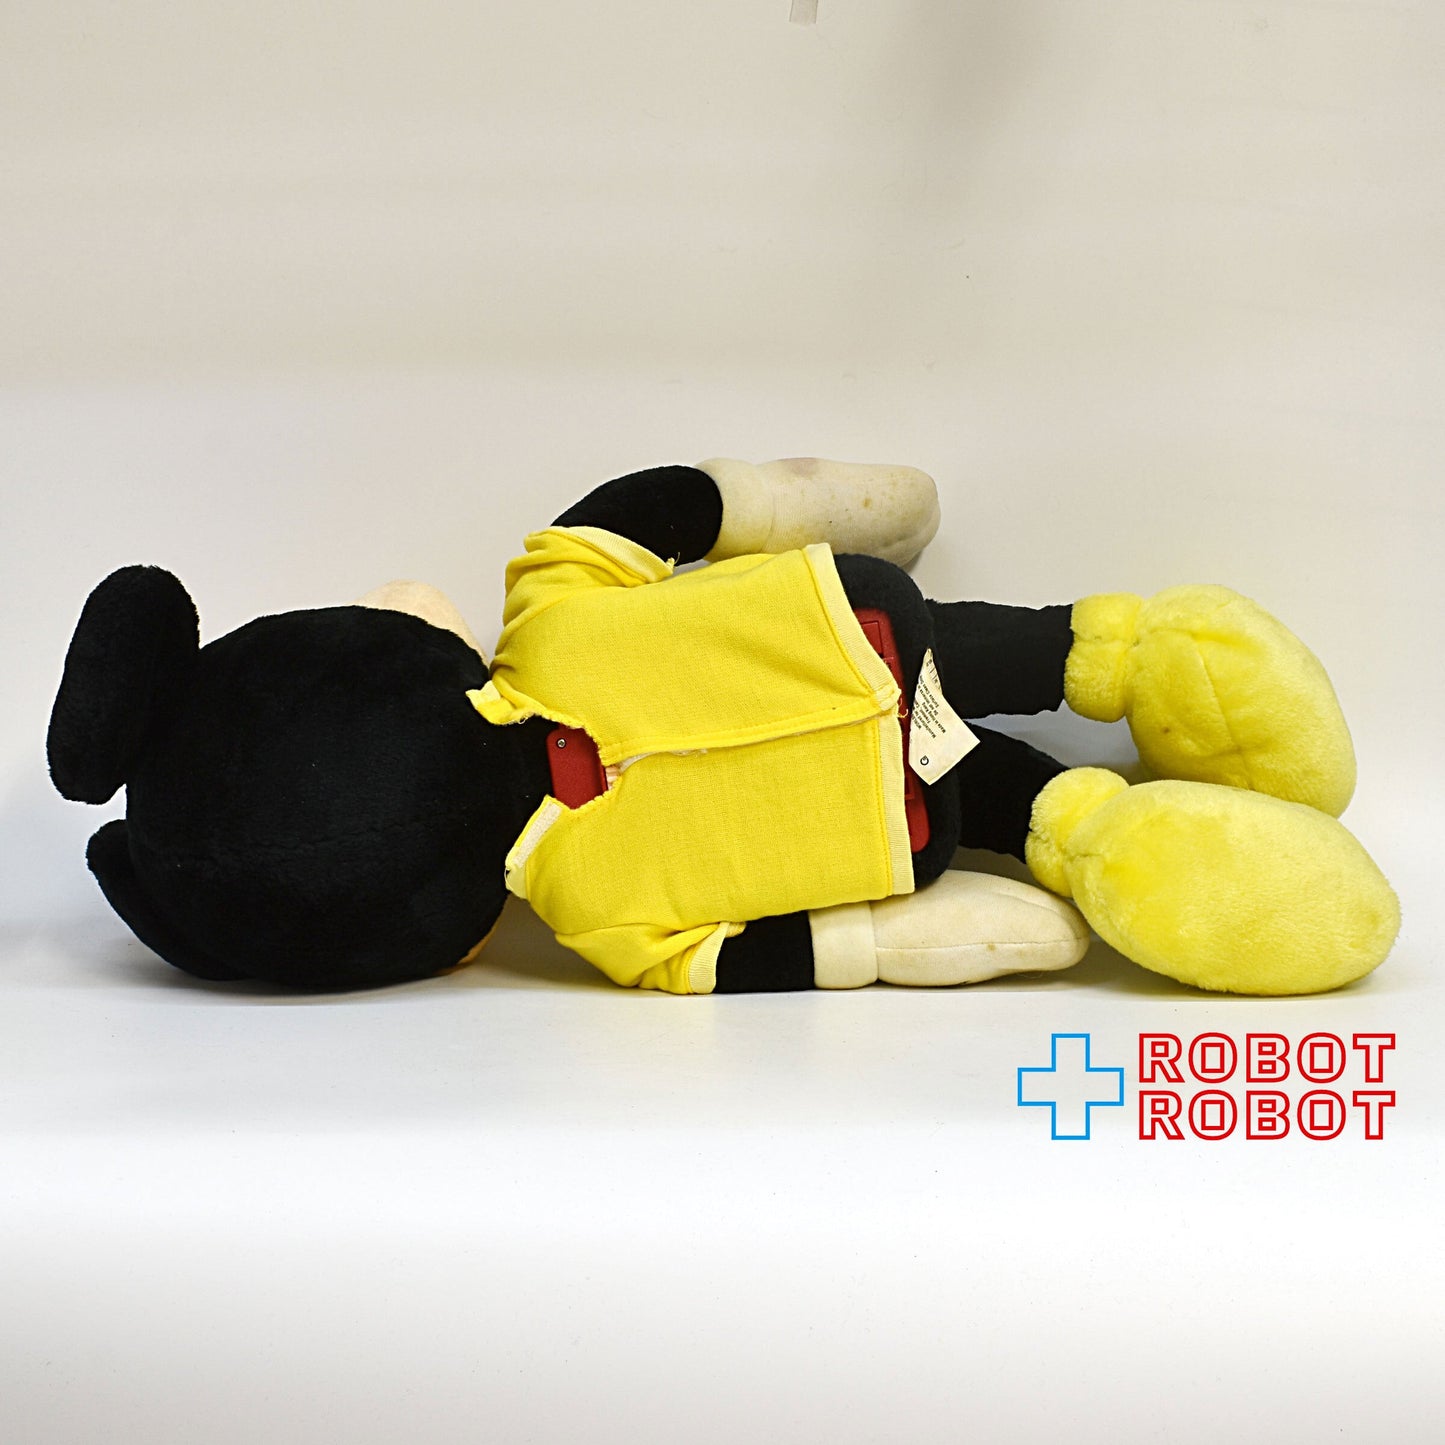 ディズニー トーキング ミッキーマウス ぬいぐるみ人形 ワールドオブワンダー社 1986